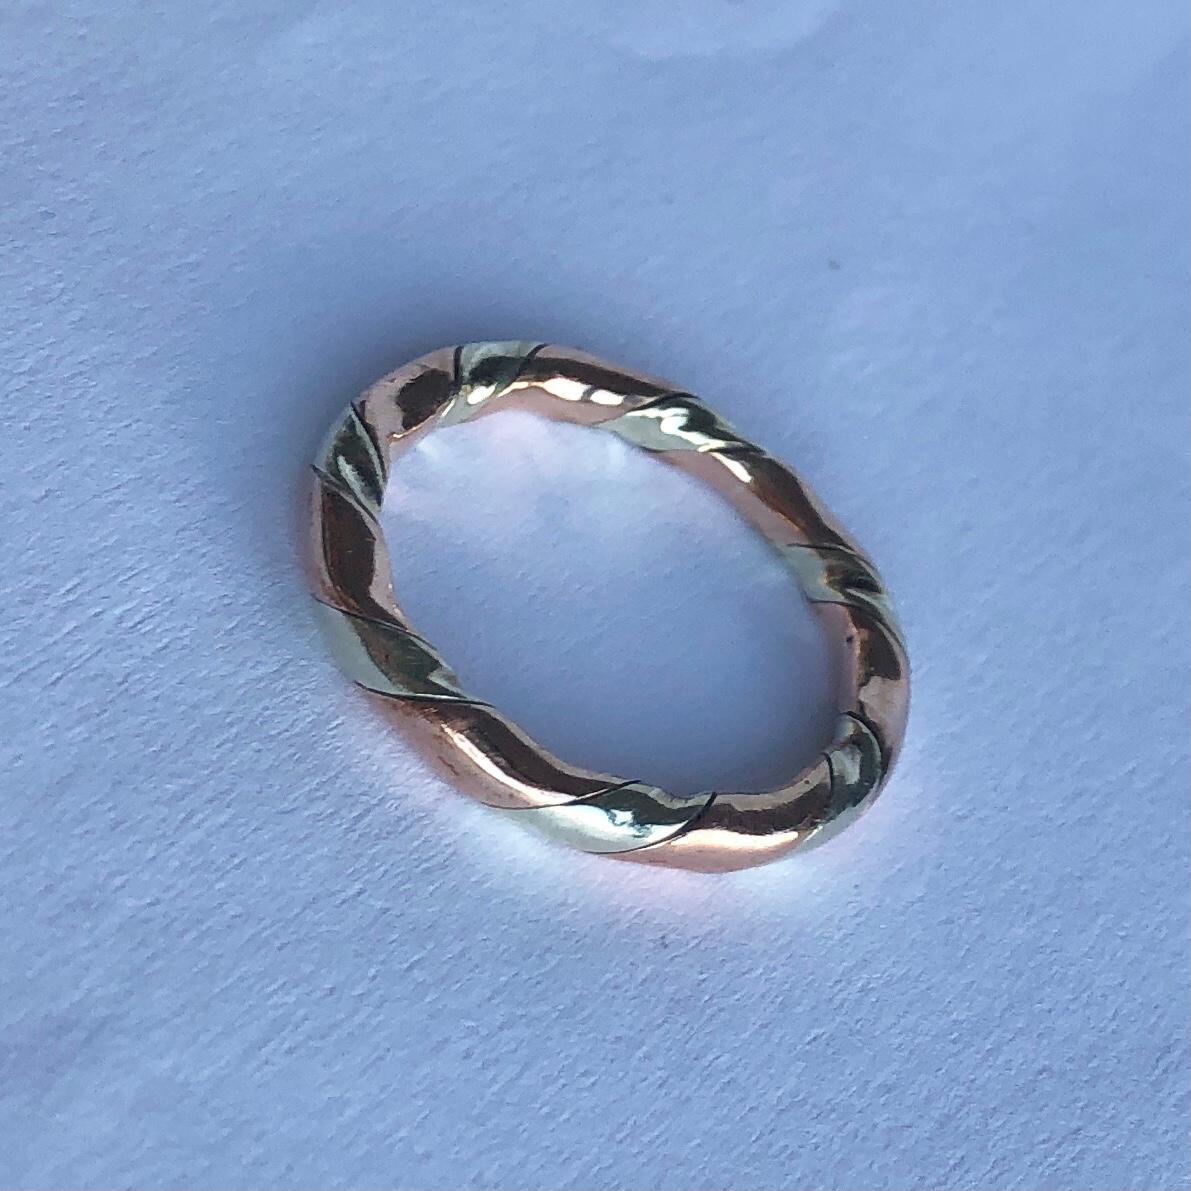 Dieser dreifarbige Ring ist aus 18 Karat Roségold und Weißgold modelliert. Sie wickeln sich perfekt umeinander und bilden ein helles, glänzendes Band. 

Ringgröße: K oder 5 1/4 
Breite des Bandes: 2,5 mm

Gewicht: 2,9 g 